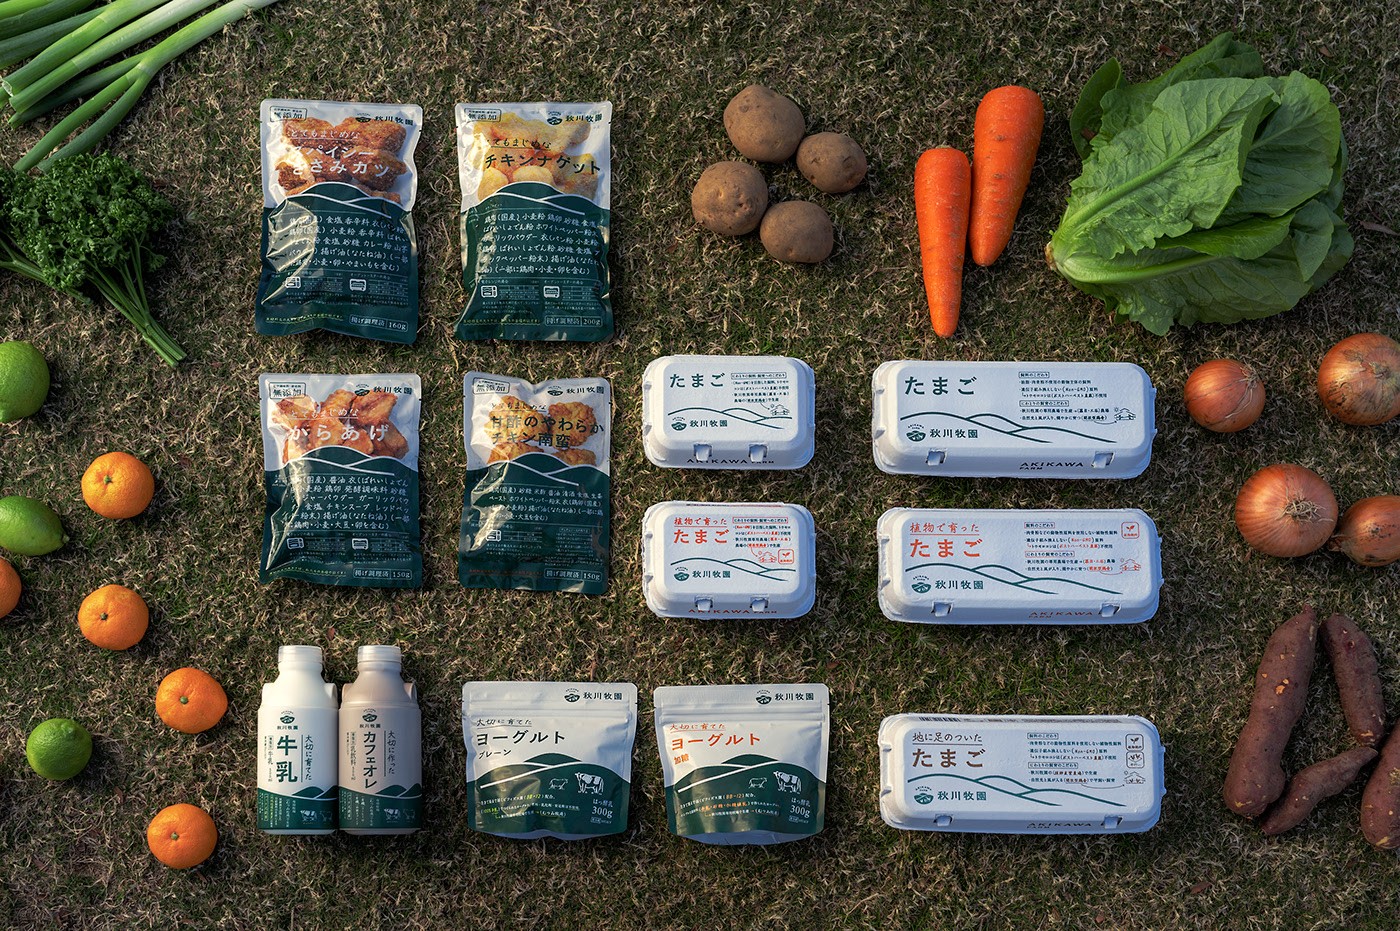 系列农产食品包装设计案例赏析 